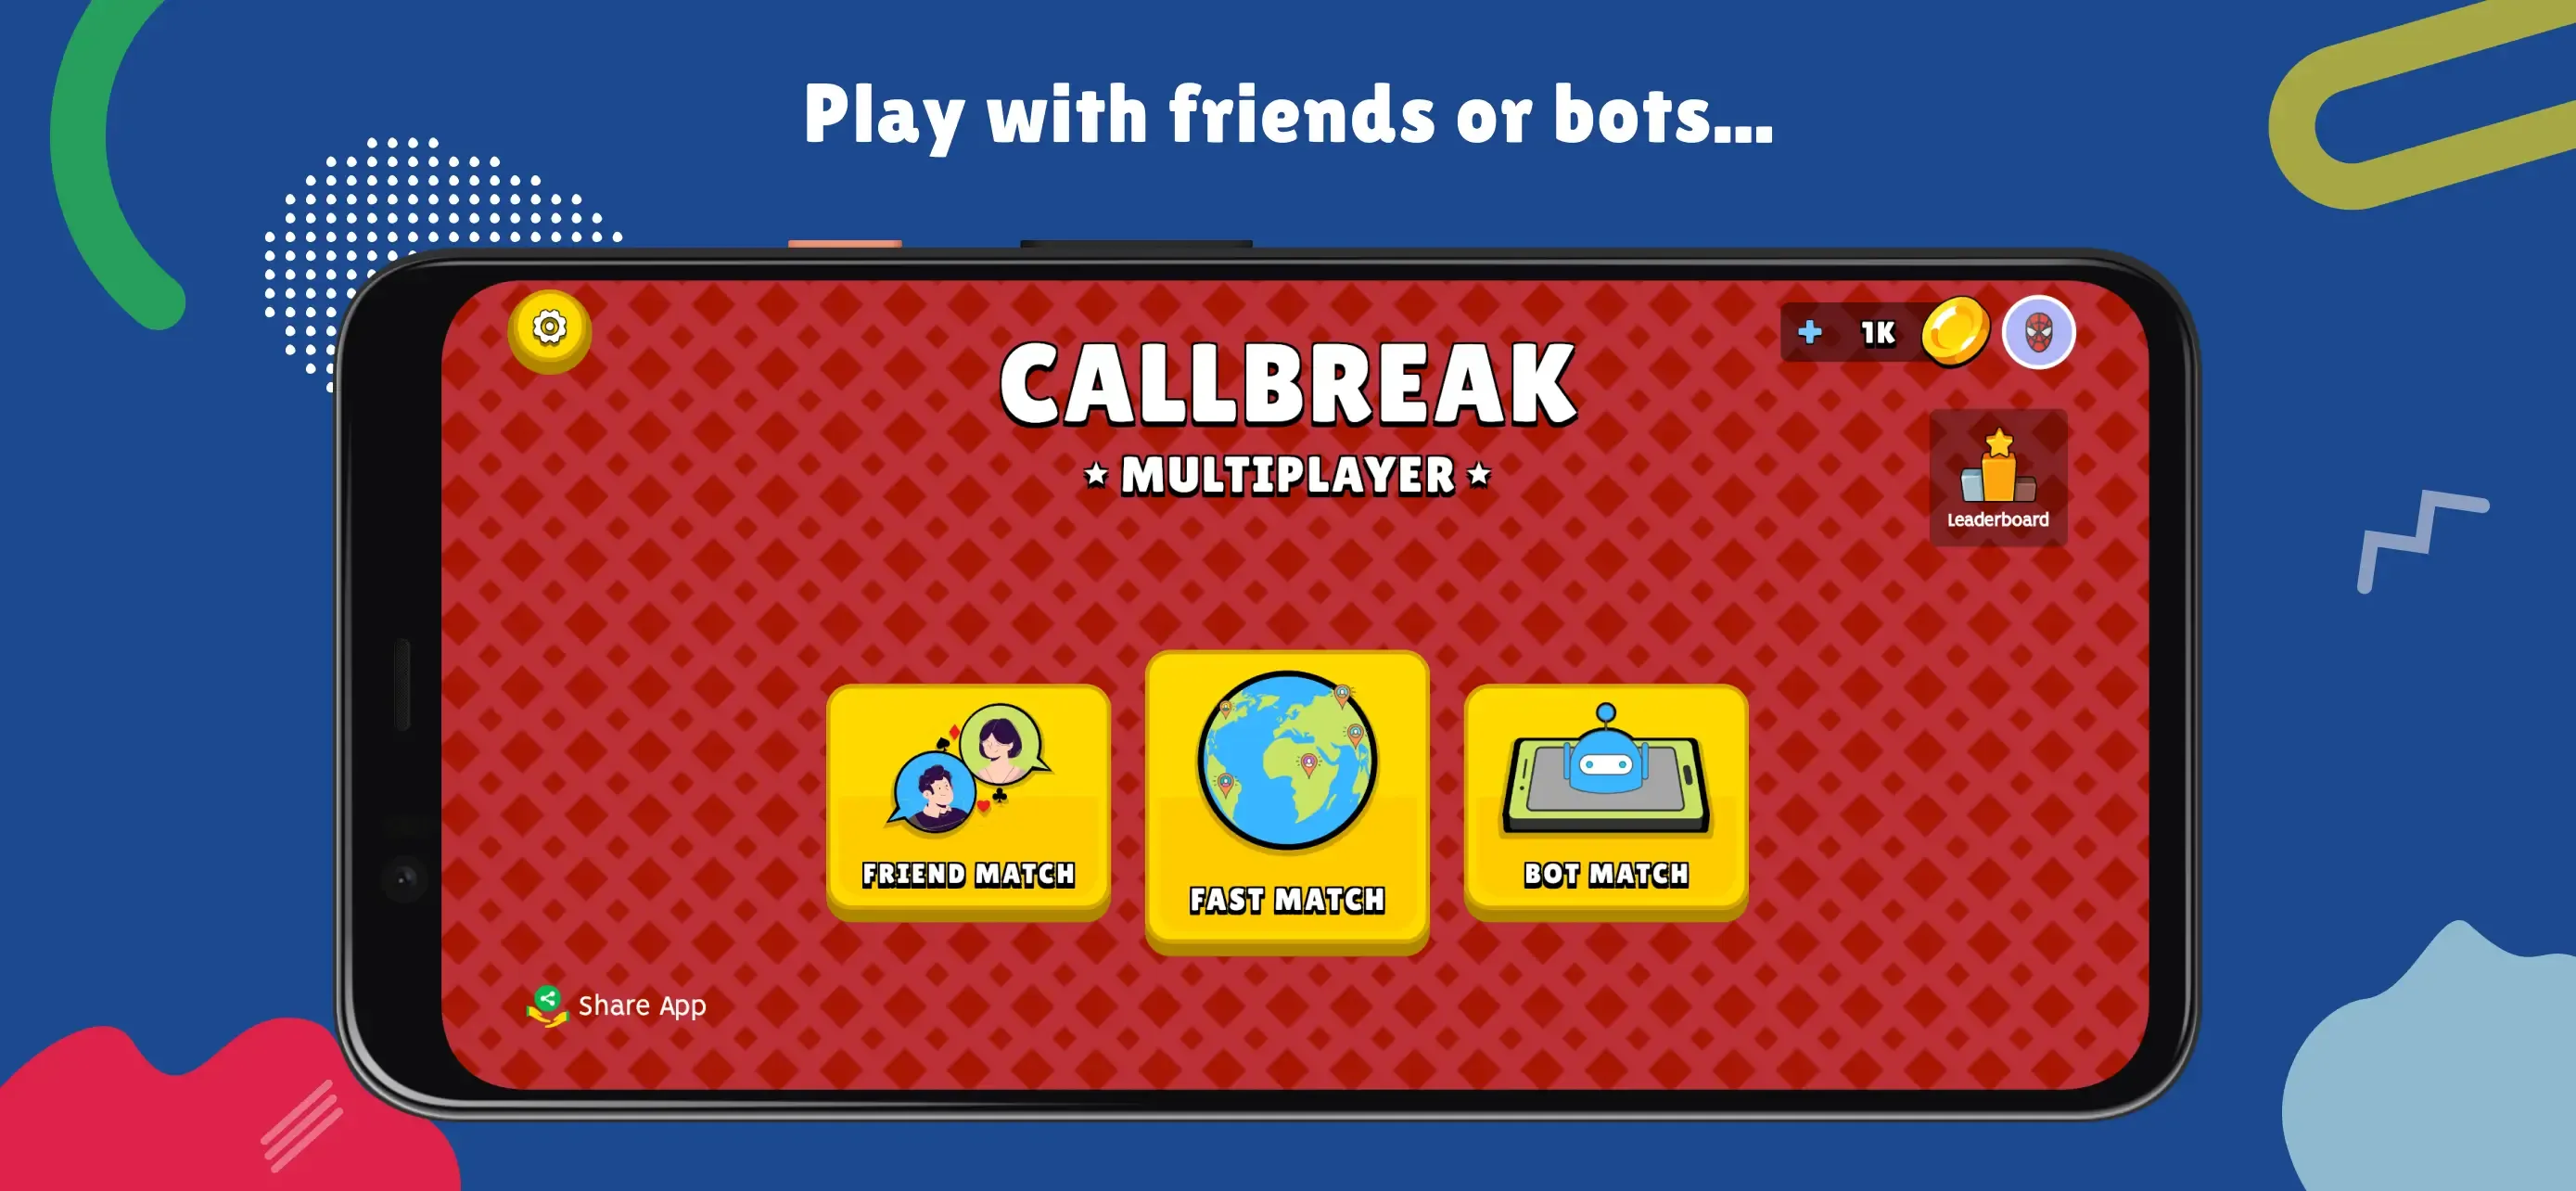 Image for Callbreak Multiplayer